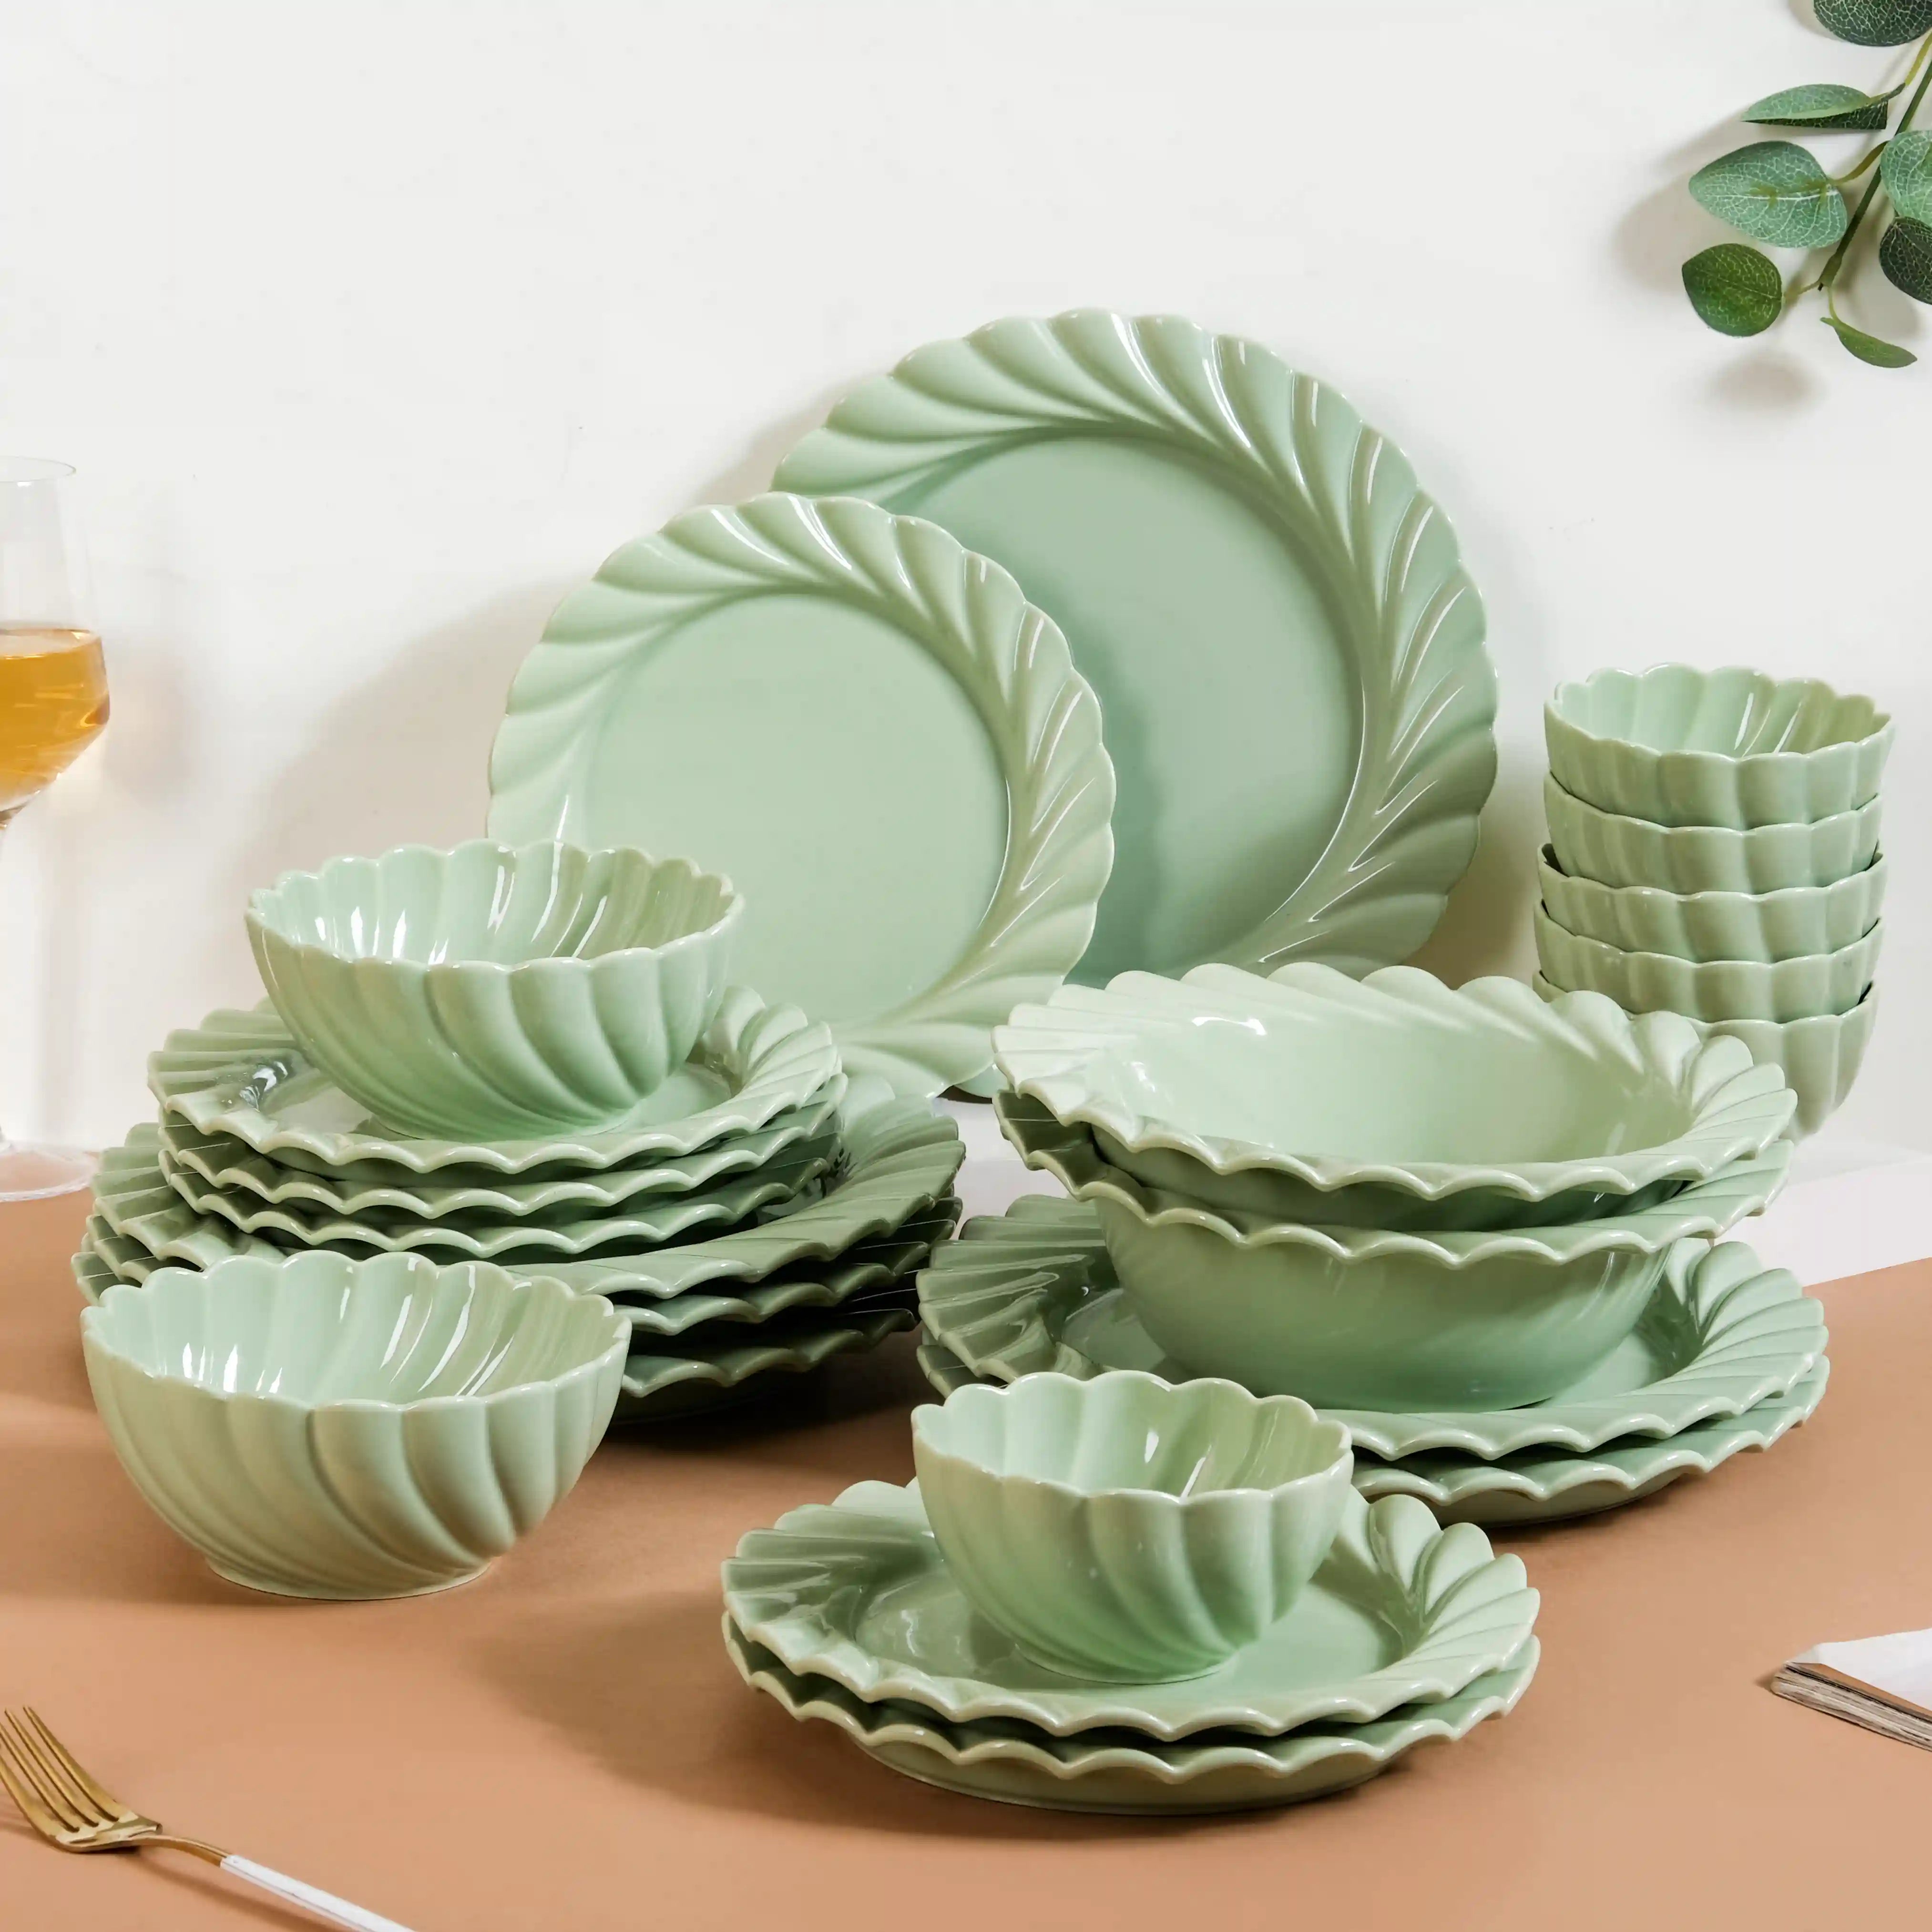 Dinner Plate - Buy Ceramic Dinner Plates Online in India